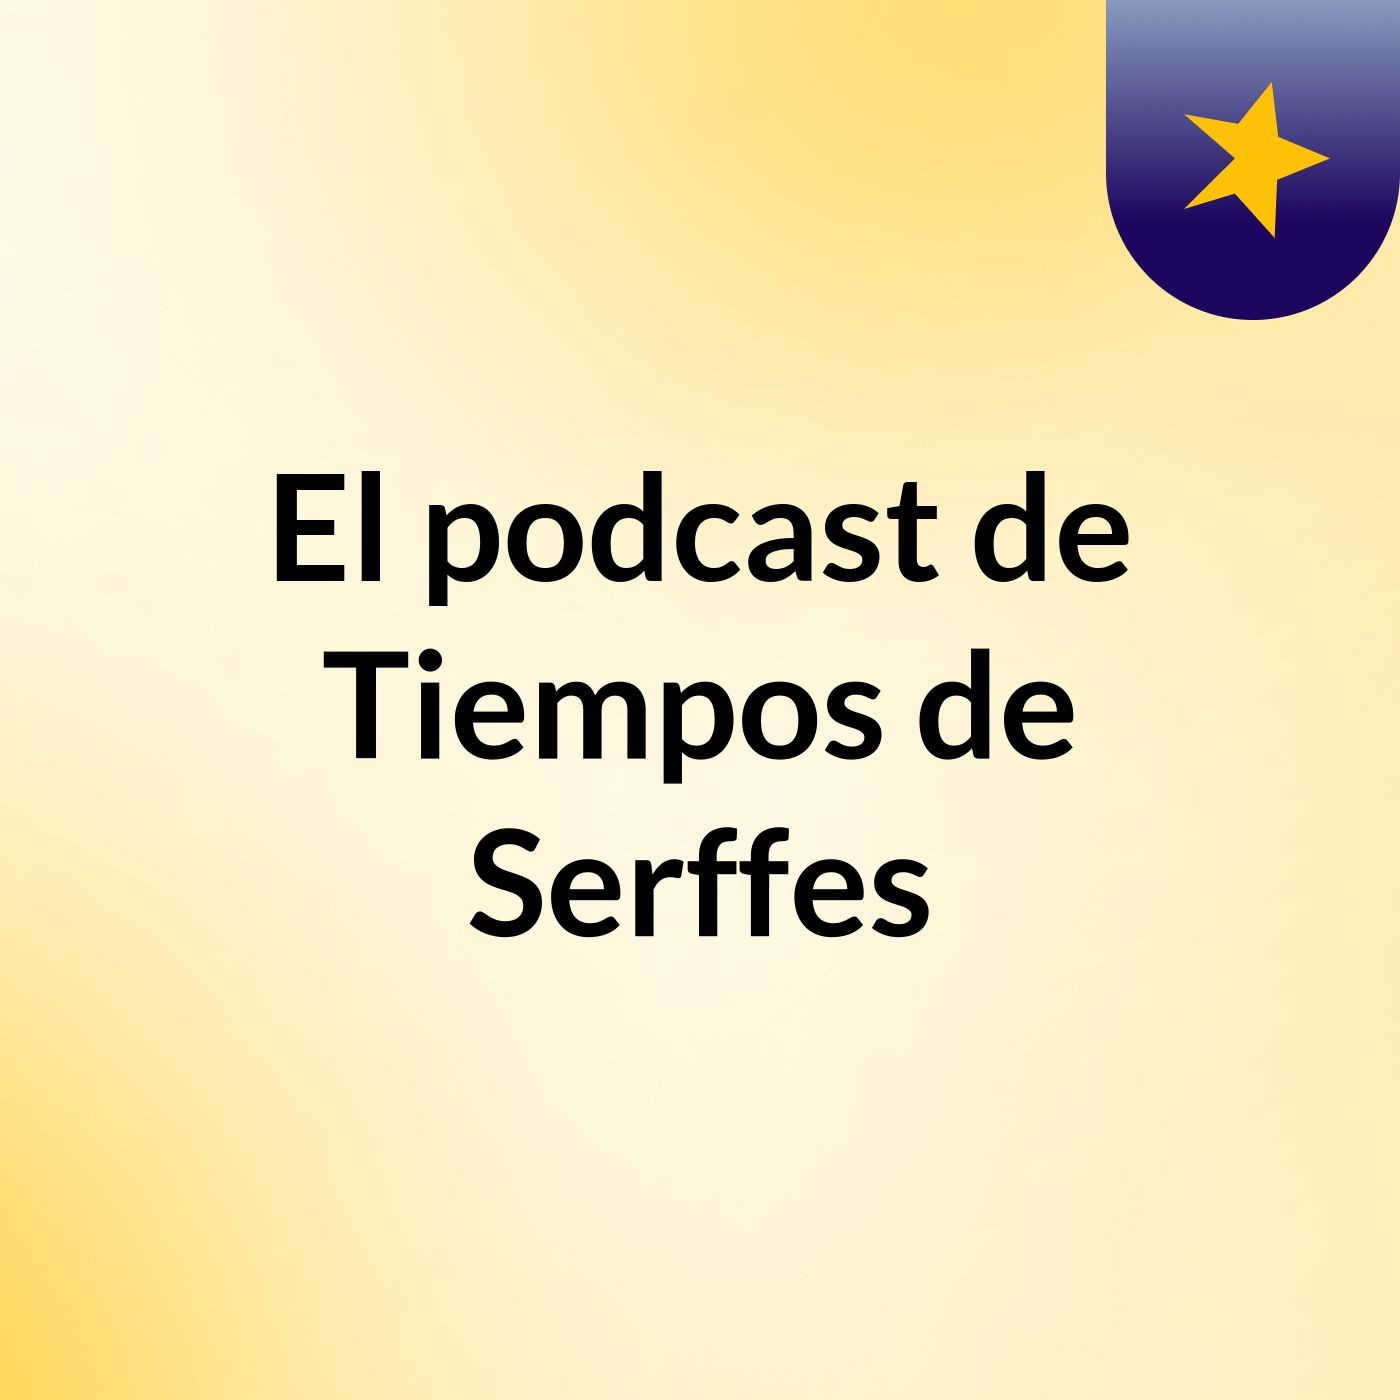 El podcast de Tiempos de Serffes